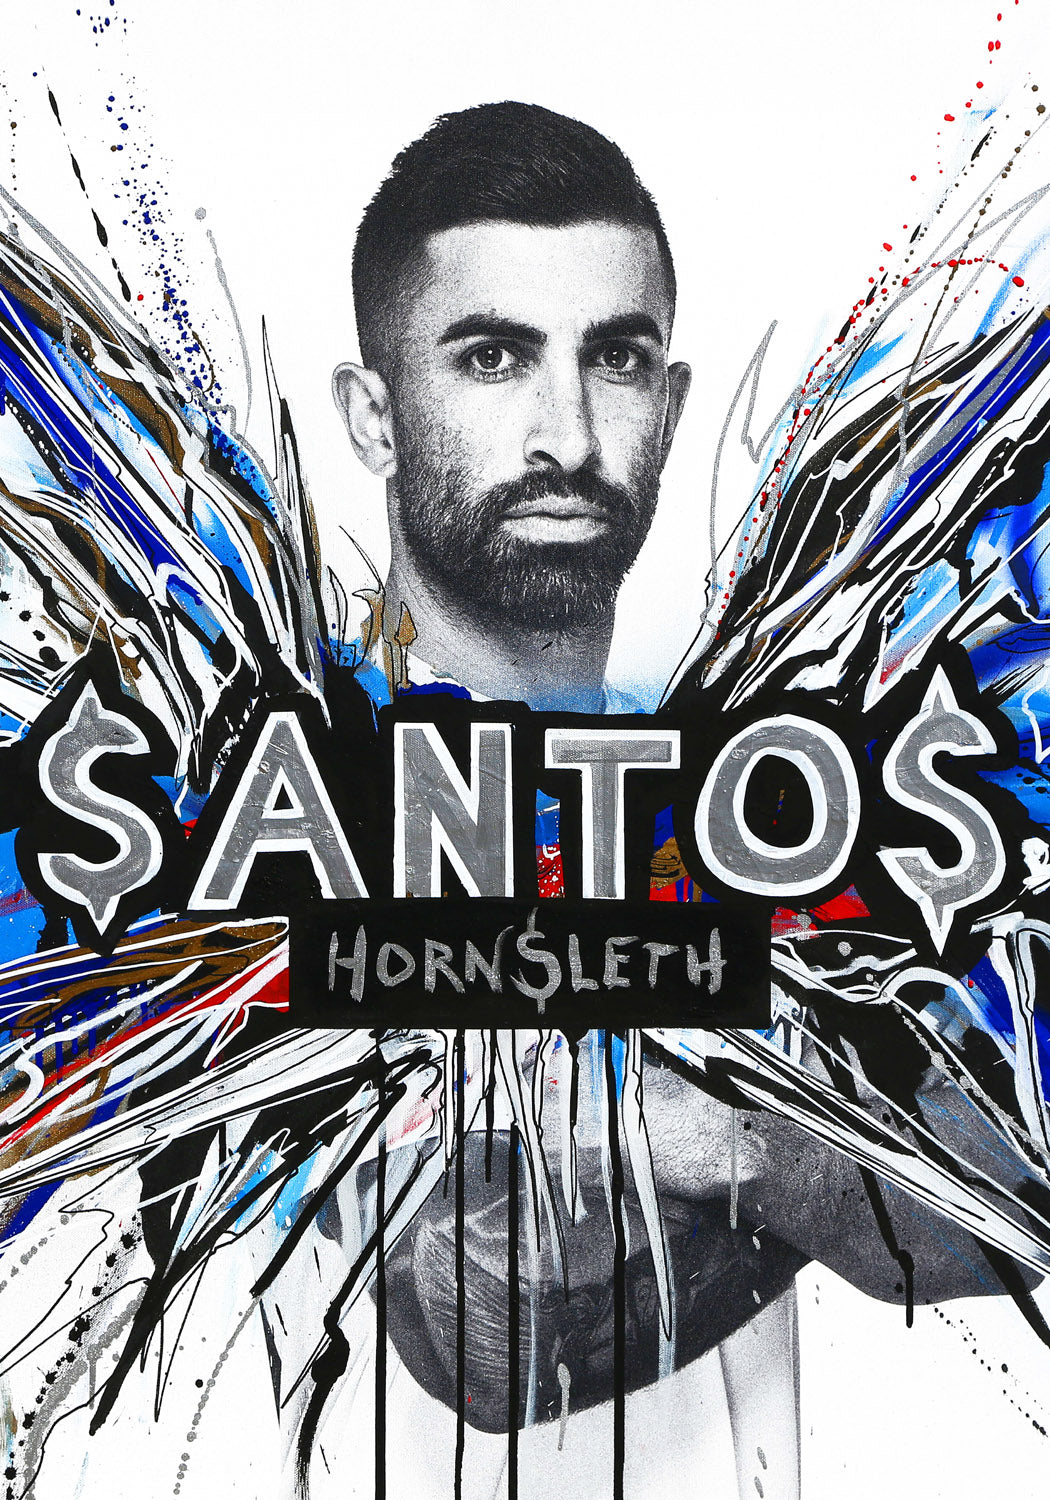 FCK - Santos - Poster by Hornsleth